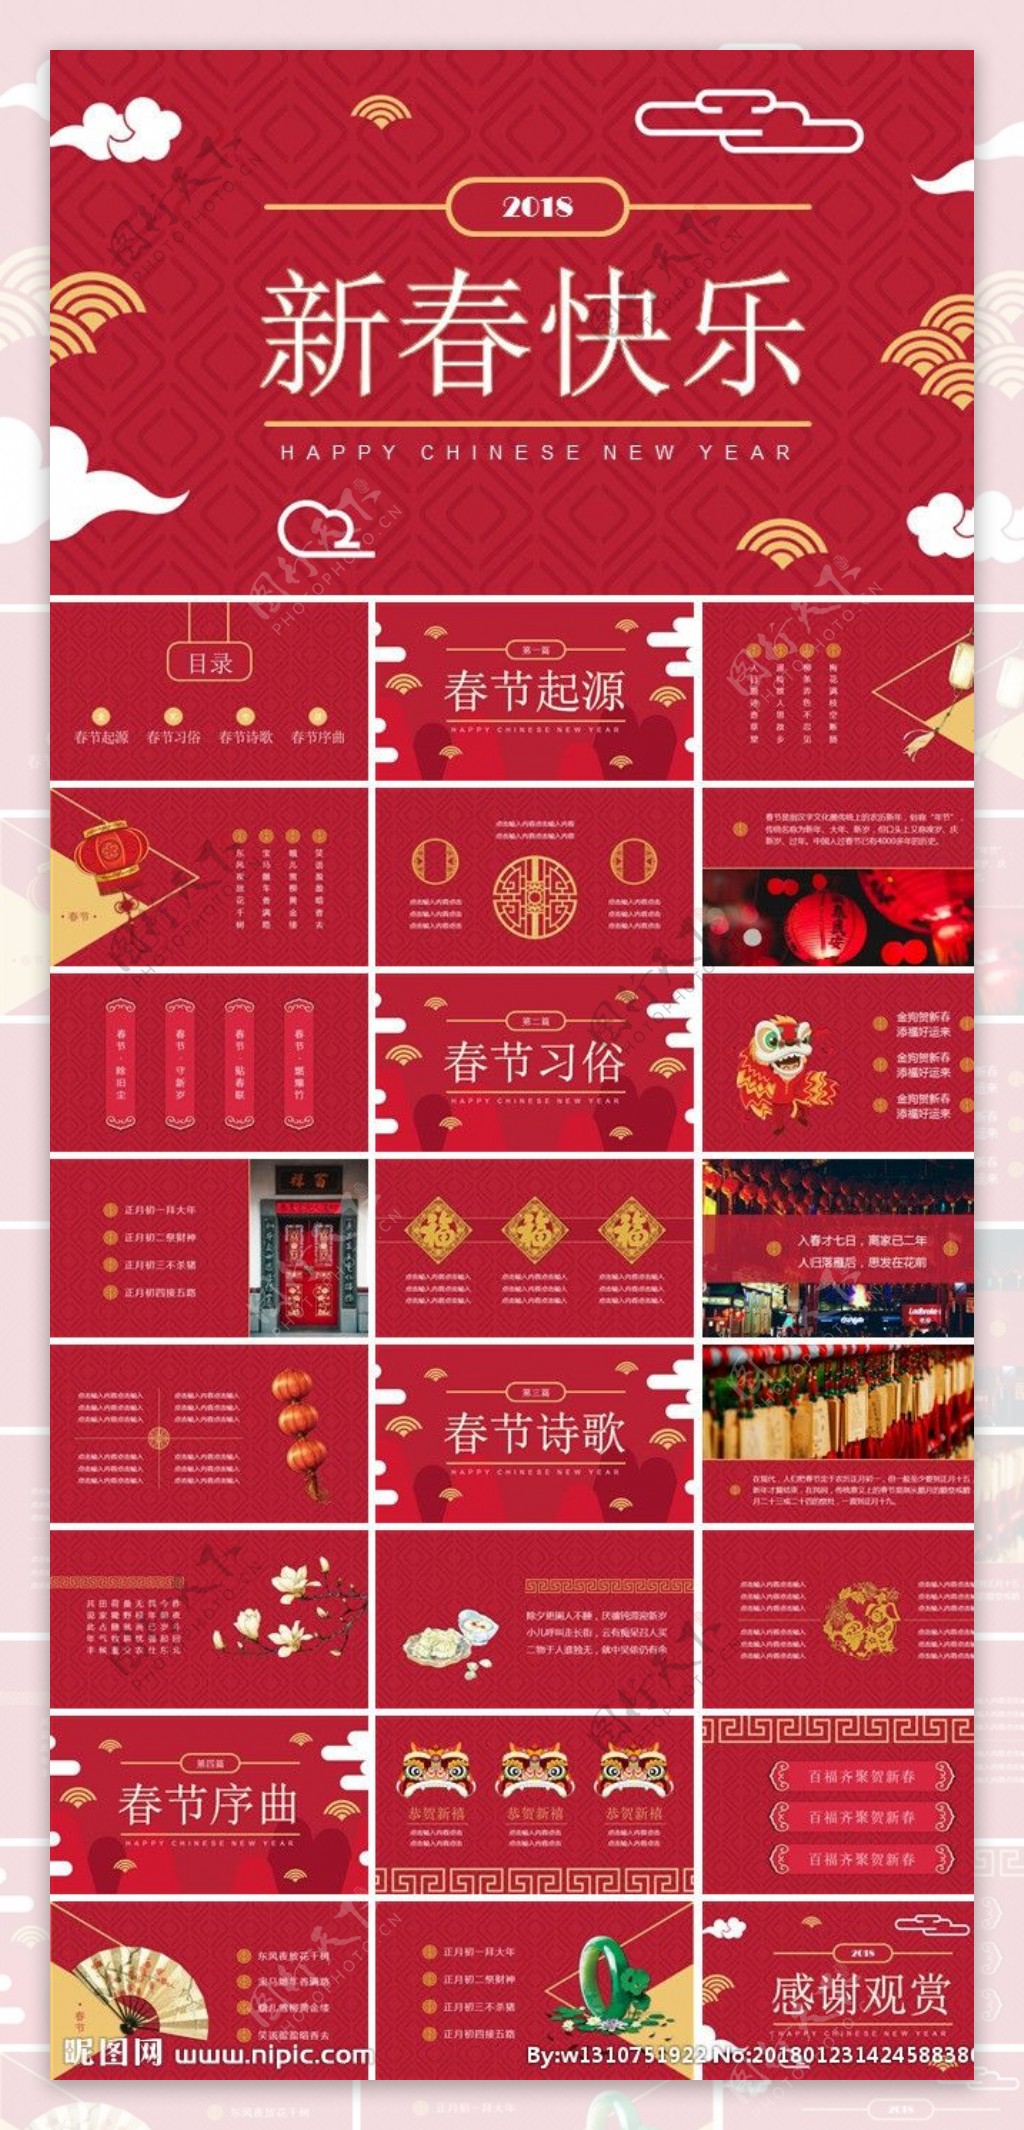 中国红春节习俗介绍ppt